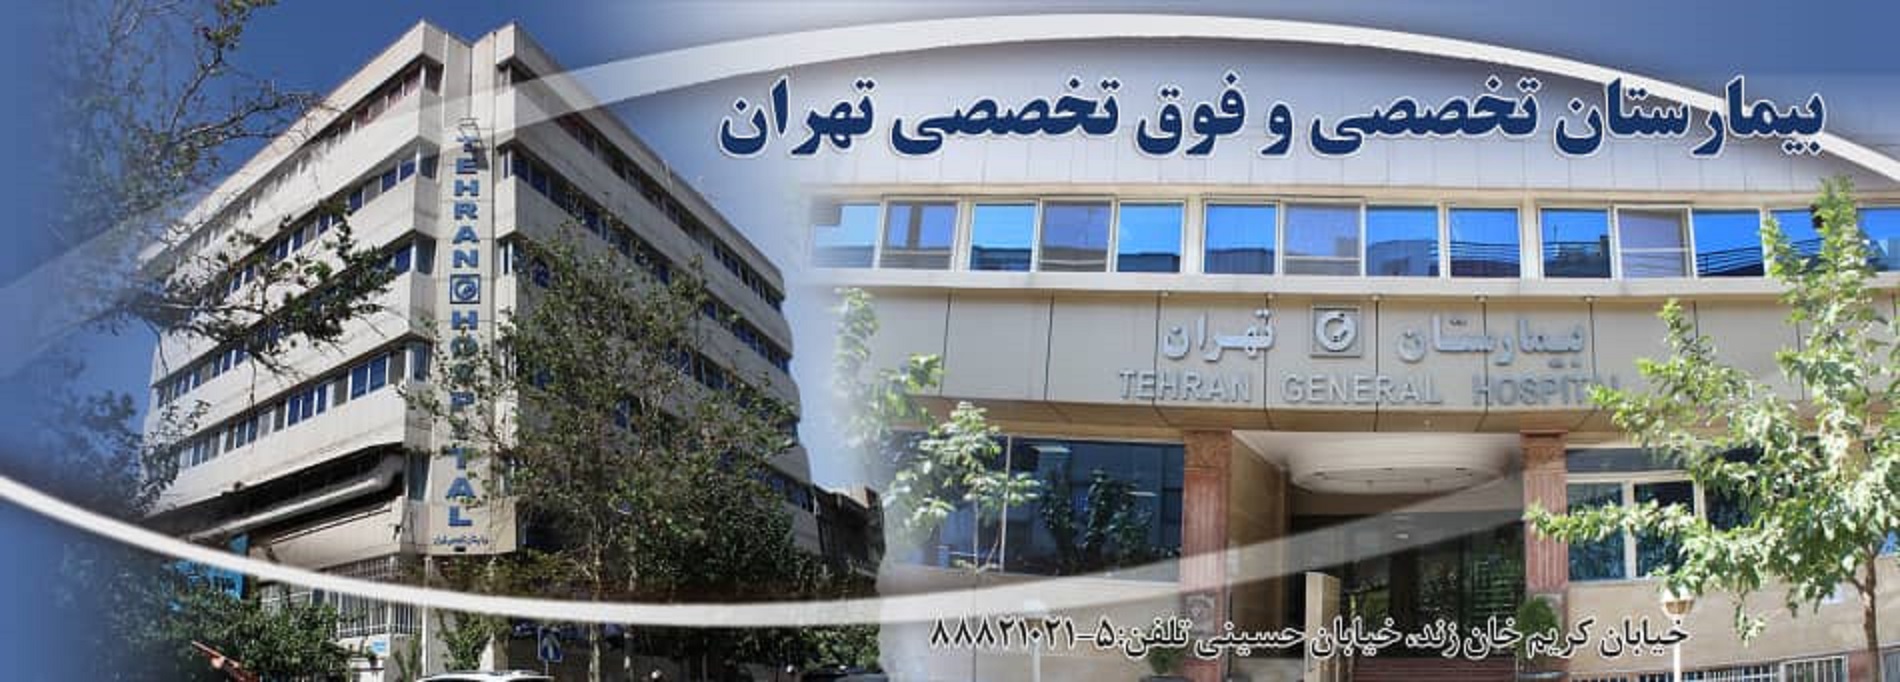 عکس از بیمارستان پیامبران تهران